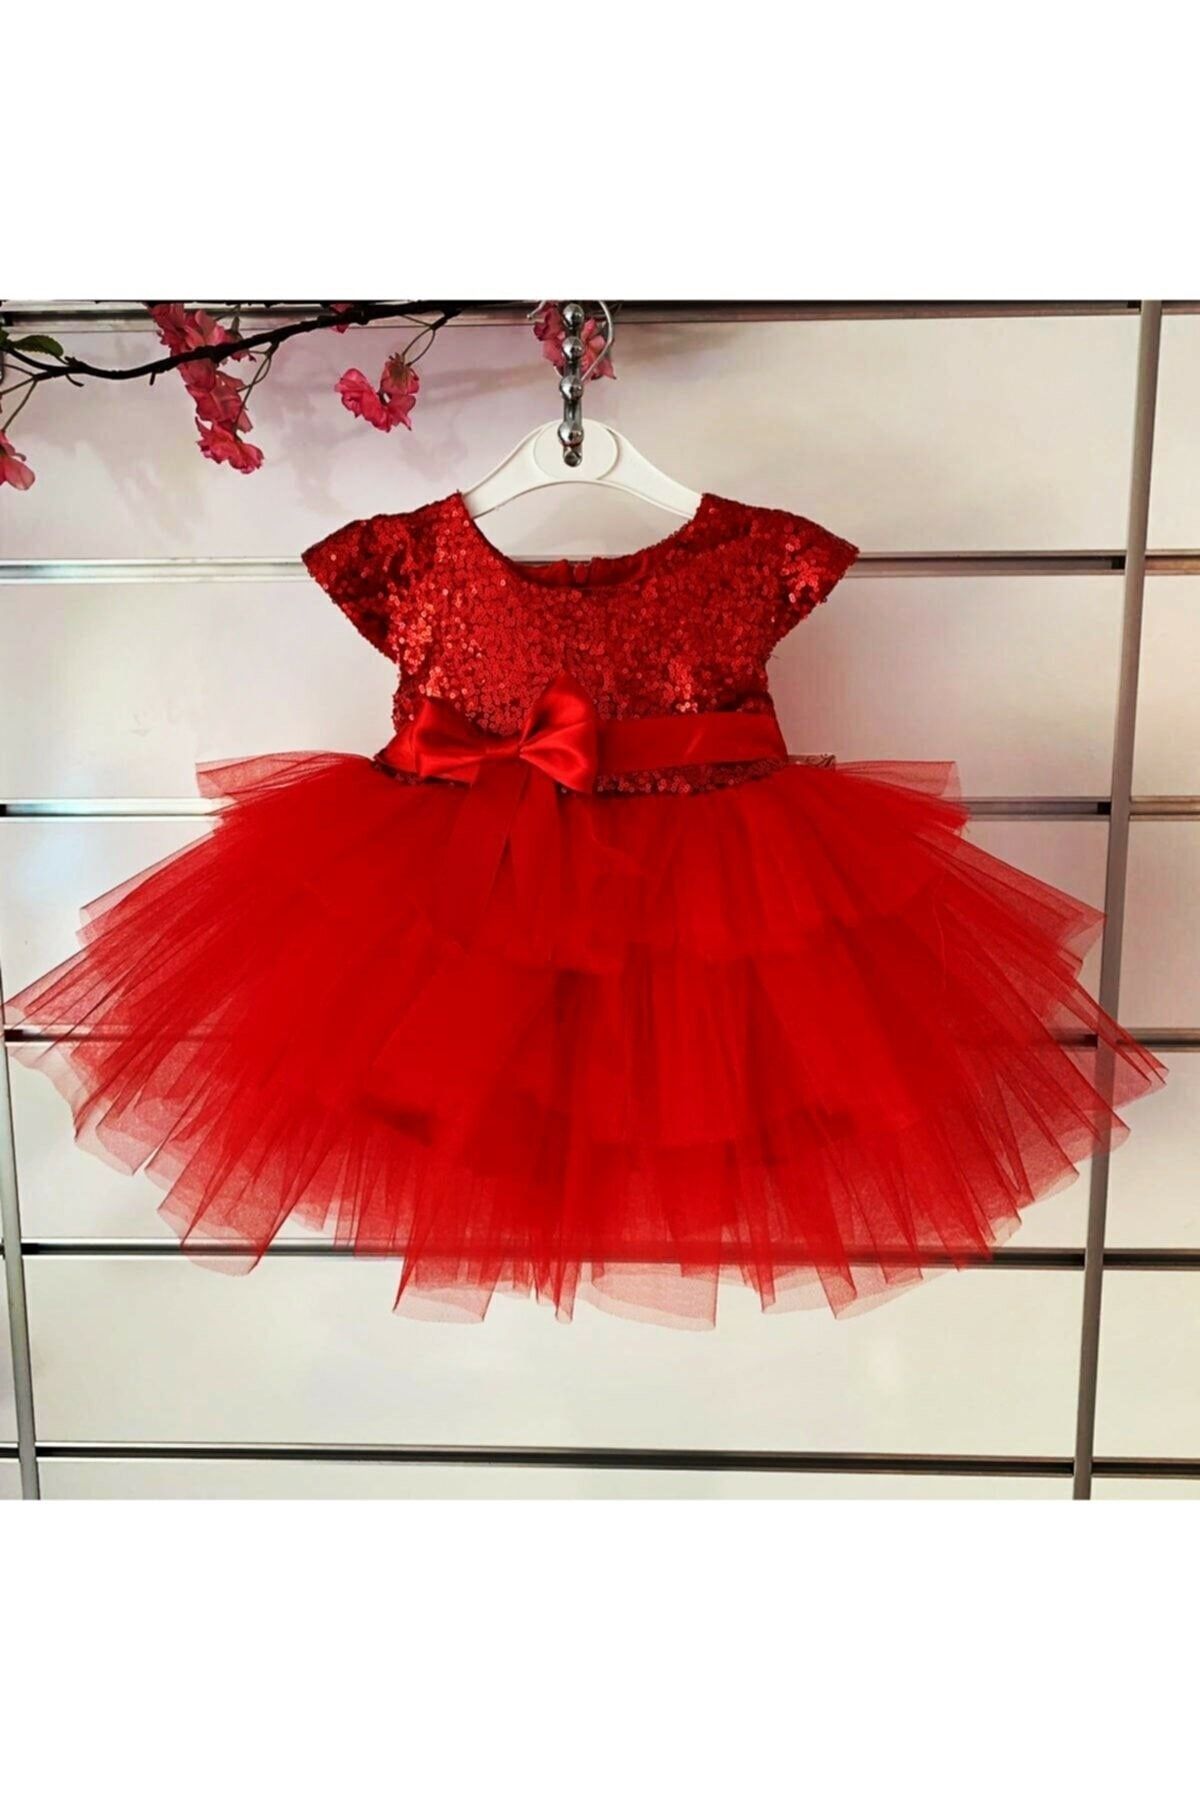 aden kids Sihirli Anlar Koleksiyonu - Sevimli Kız Çocuk Elbisesi Kırmızı Pulpayet